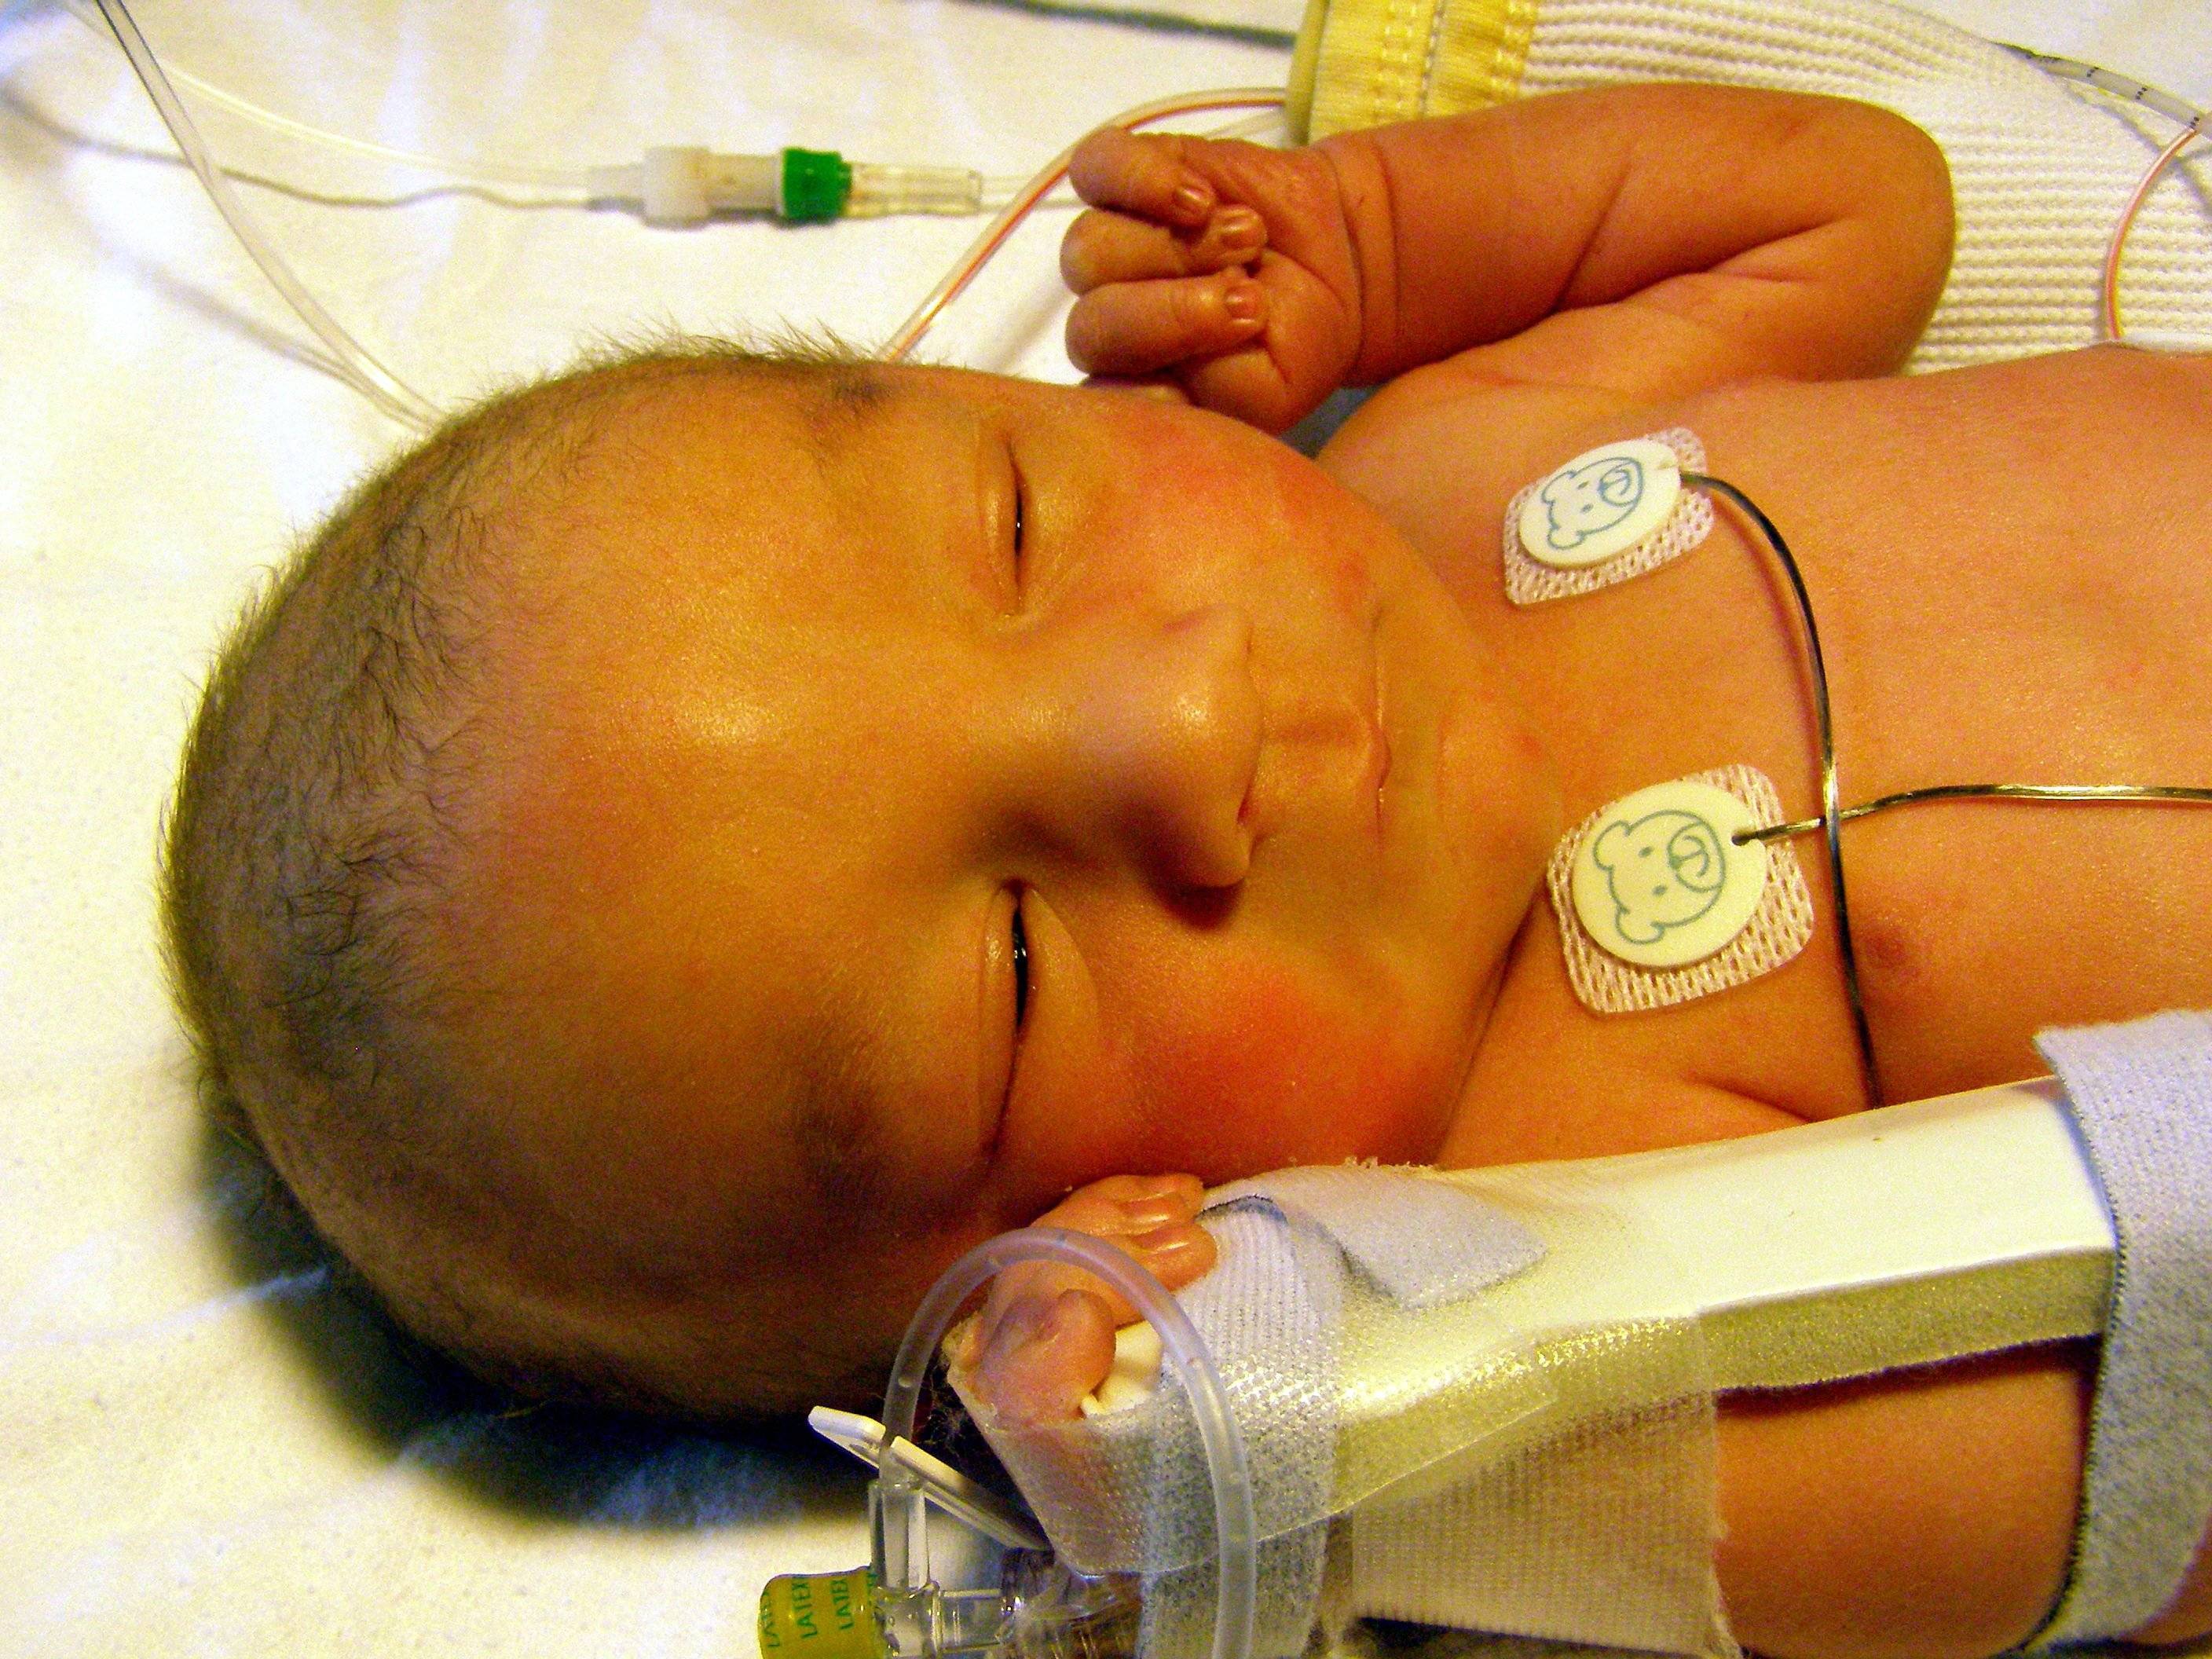 Послеродовая желтуха у новорожденных: особенности и лечение — медицинский центр «целитель»